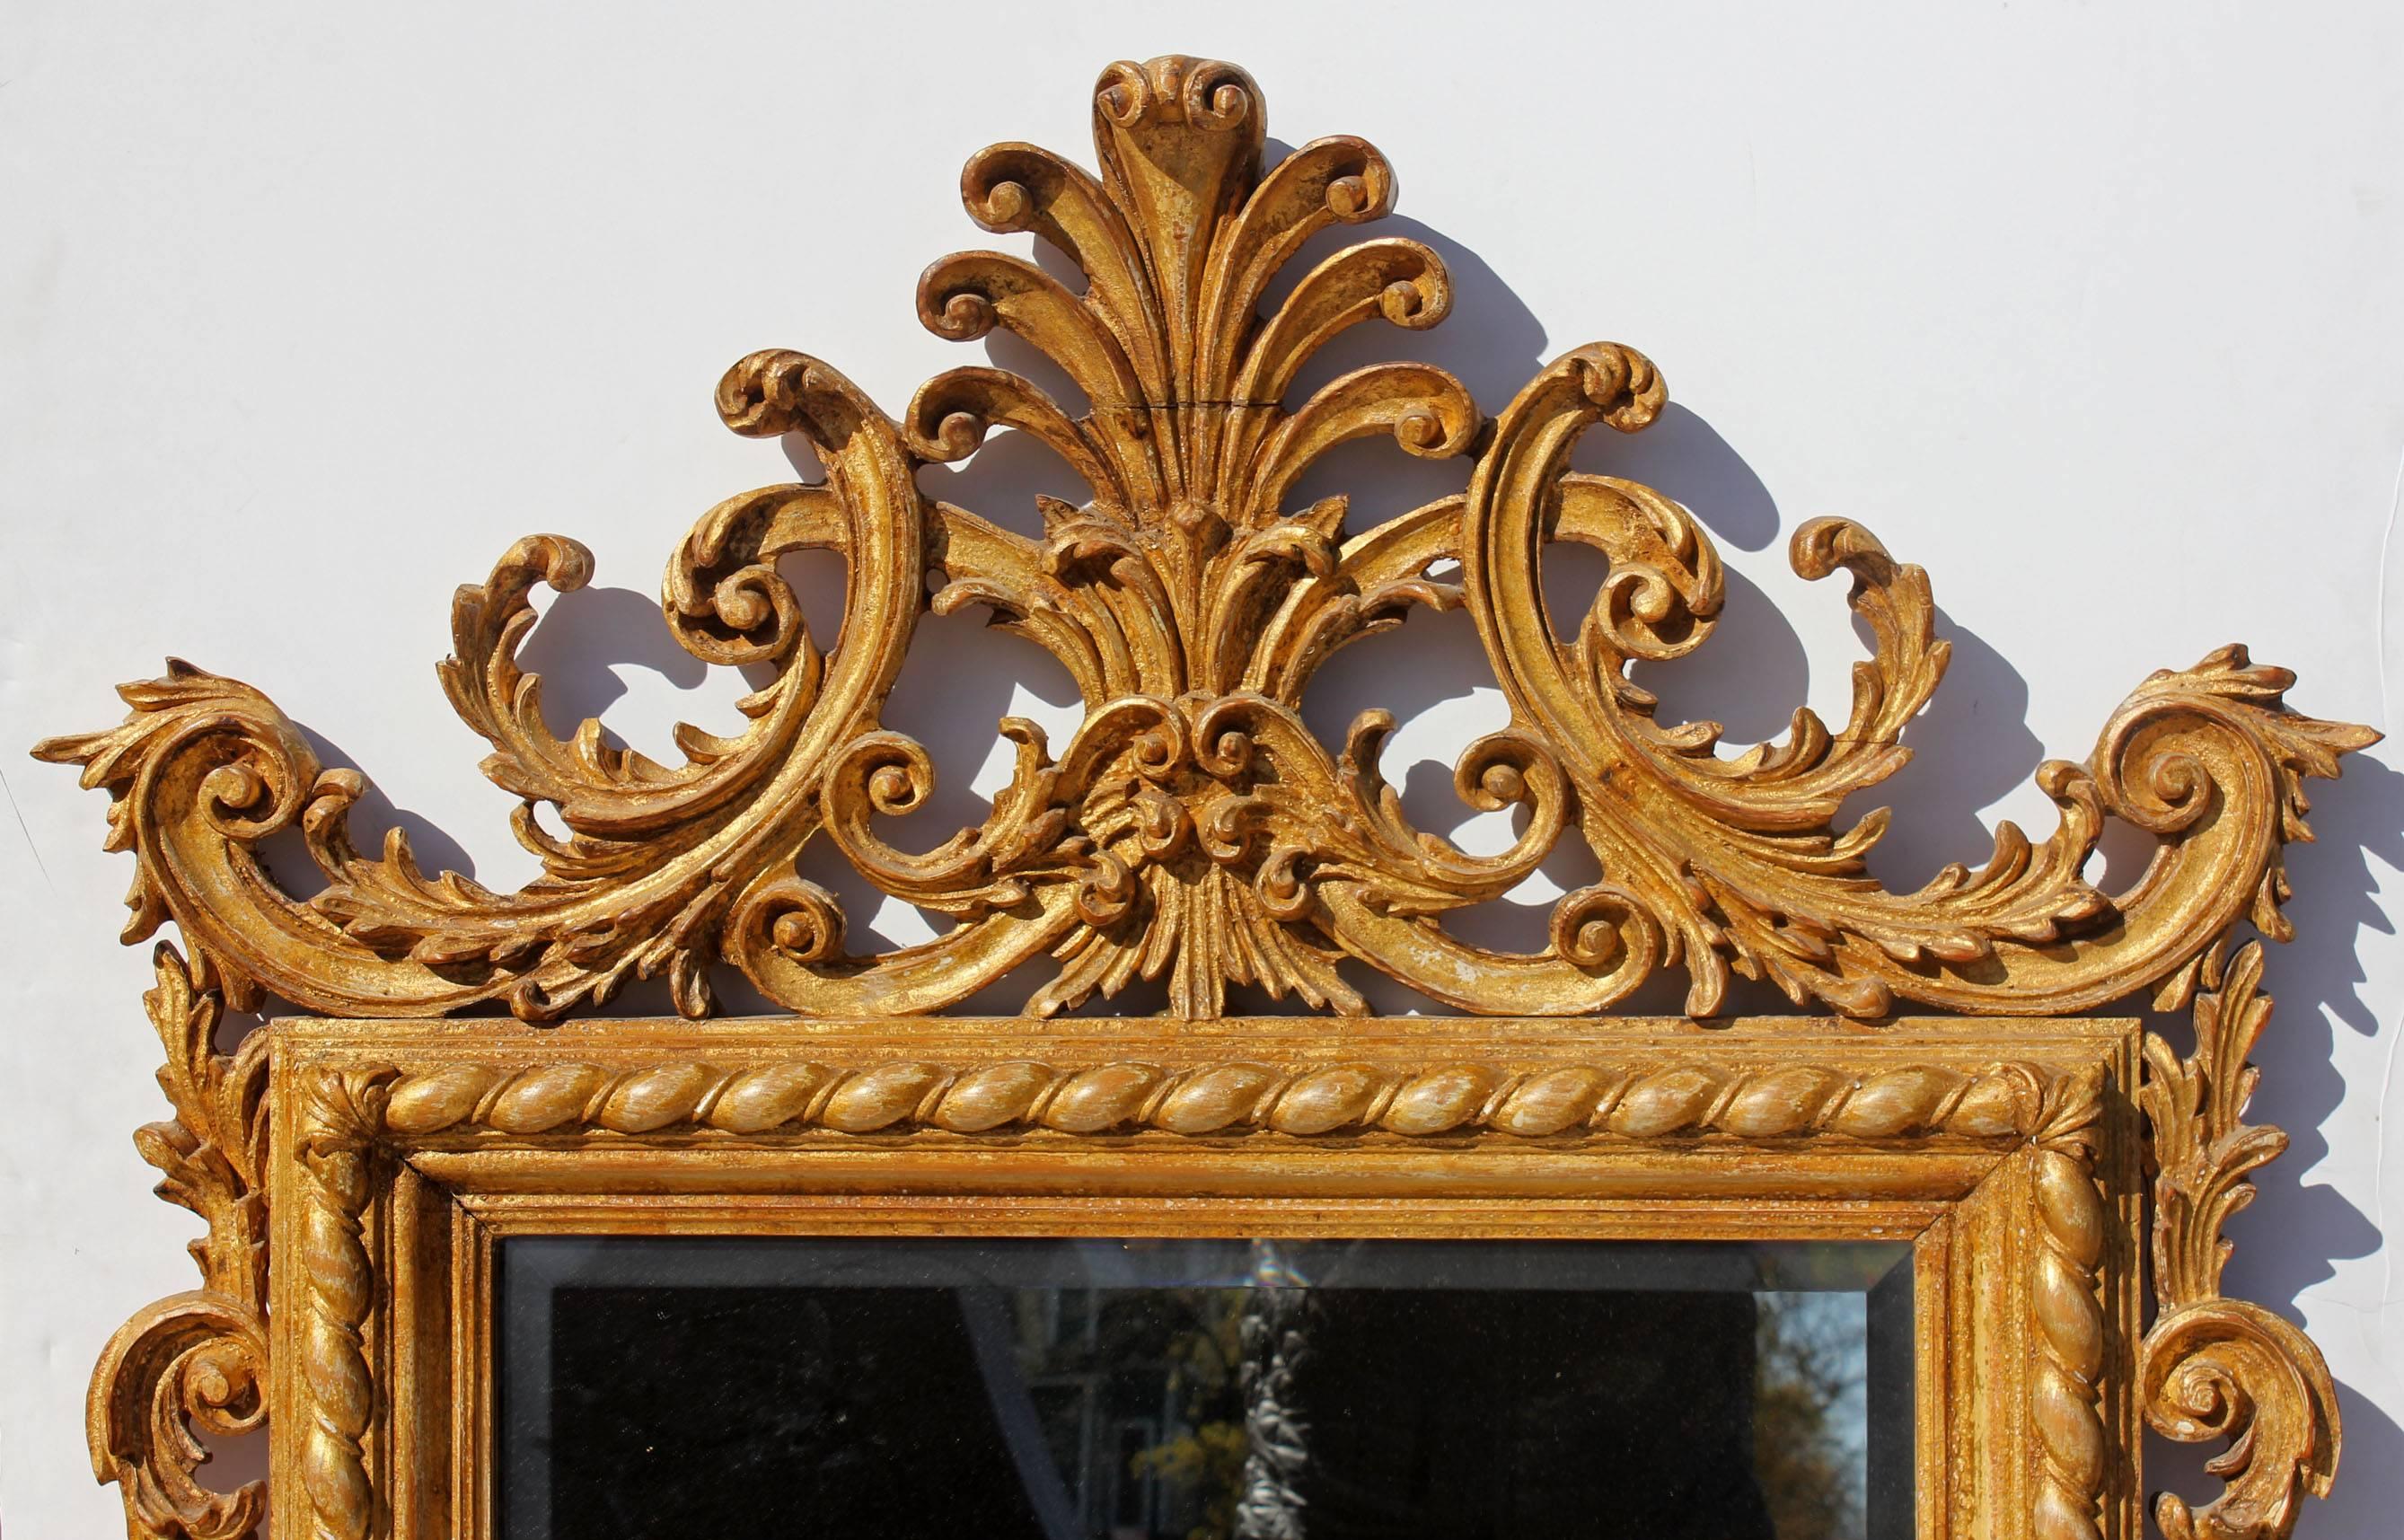 Miroir en verre biseauté en bois massif finement sculpté et doré, italien, style néoclassique.